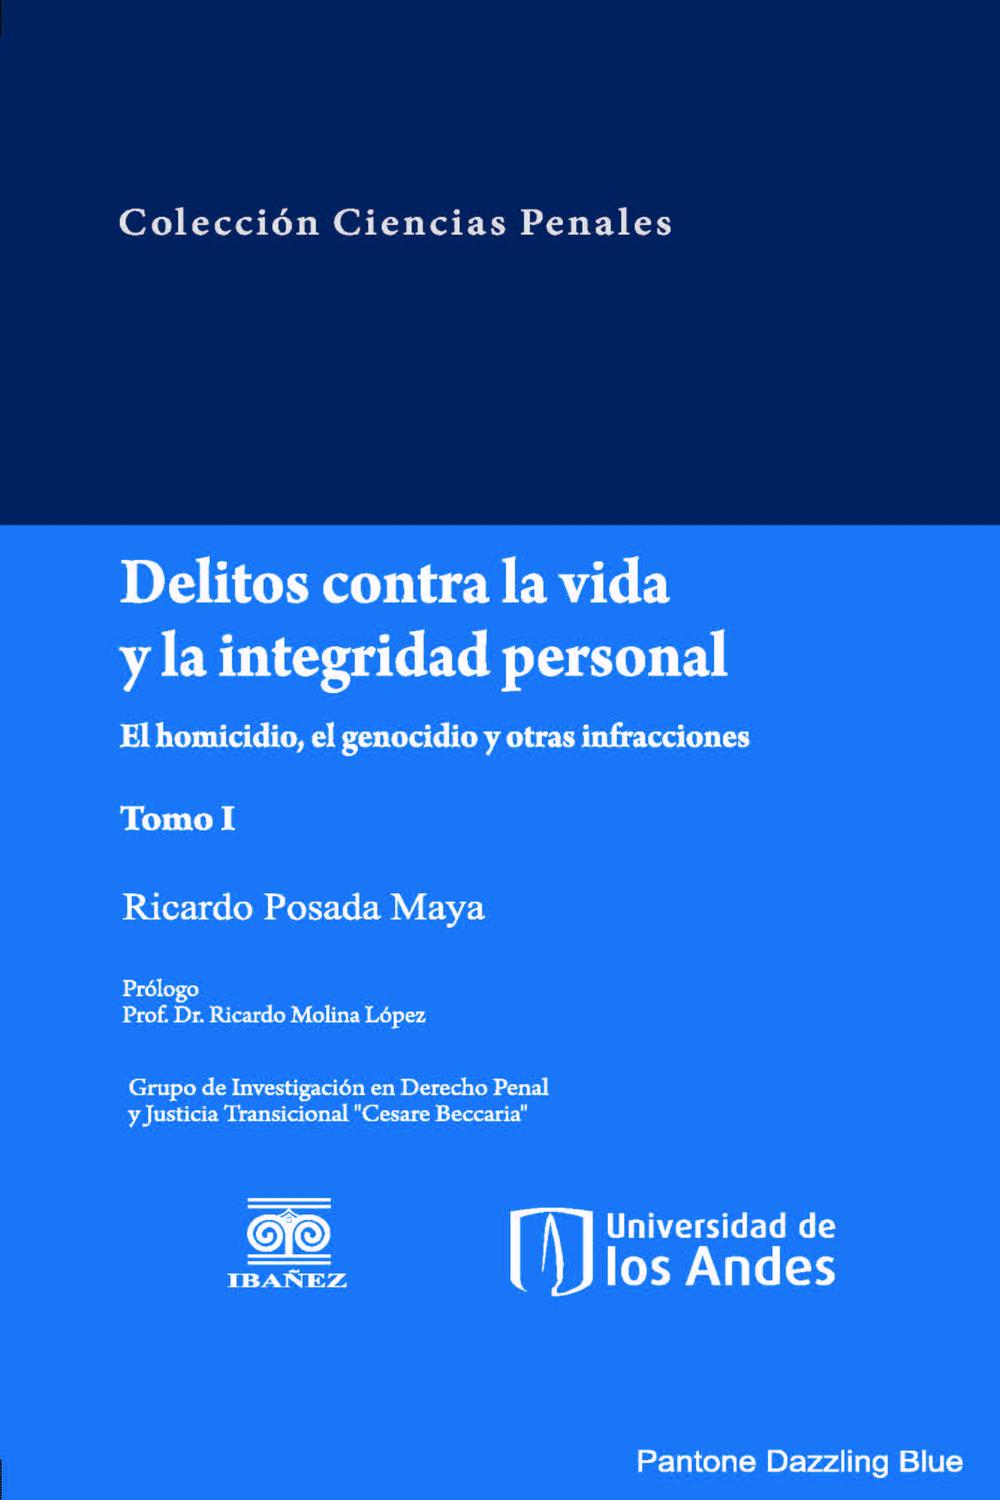 Delitos contra la vida y la integridad personal el homicidio, el genocidio y otras infracciones (Tomo I) - Ricardo Posada Maya